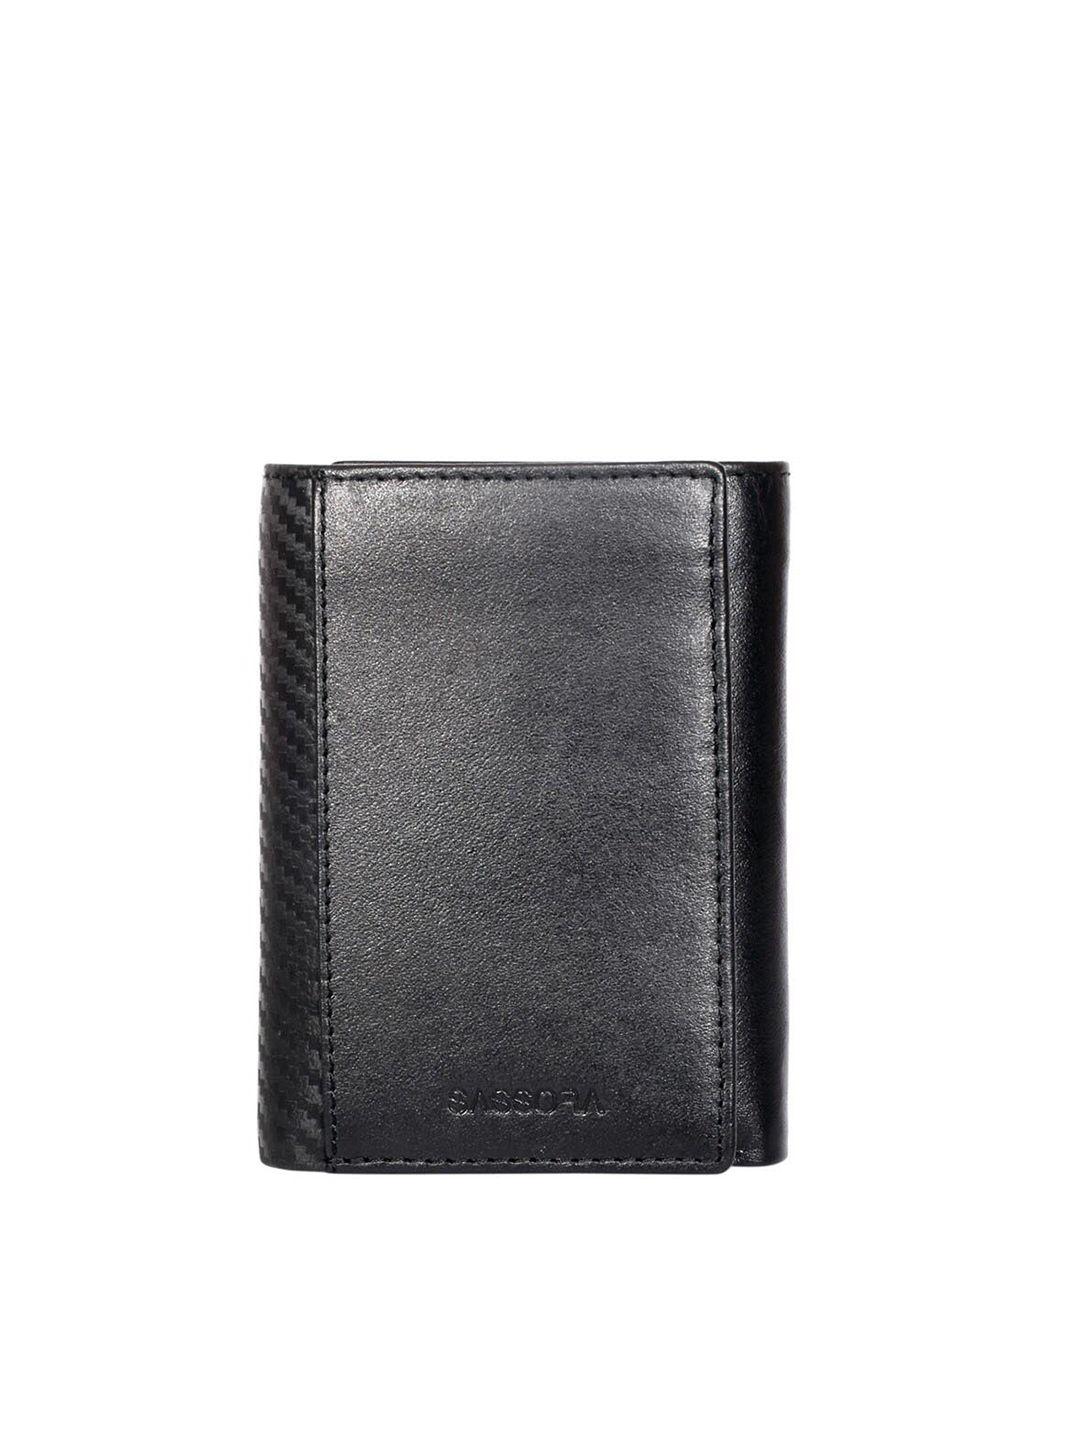 sassora men leather three fold wallet